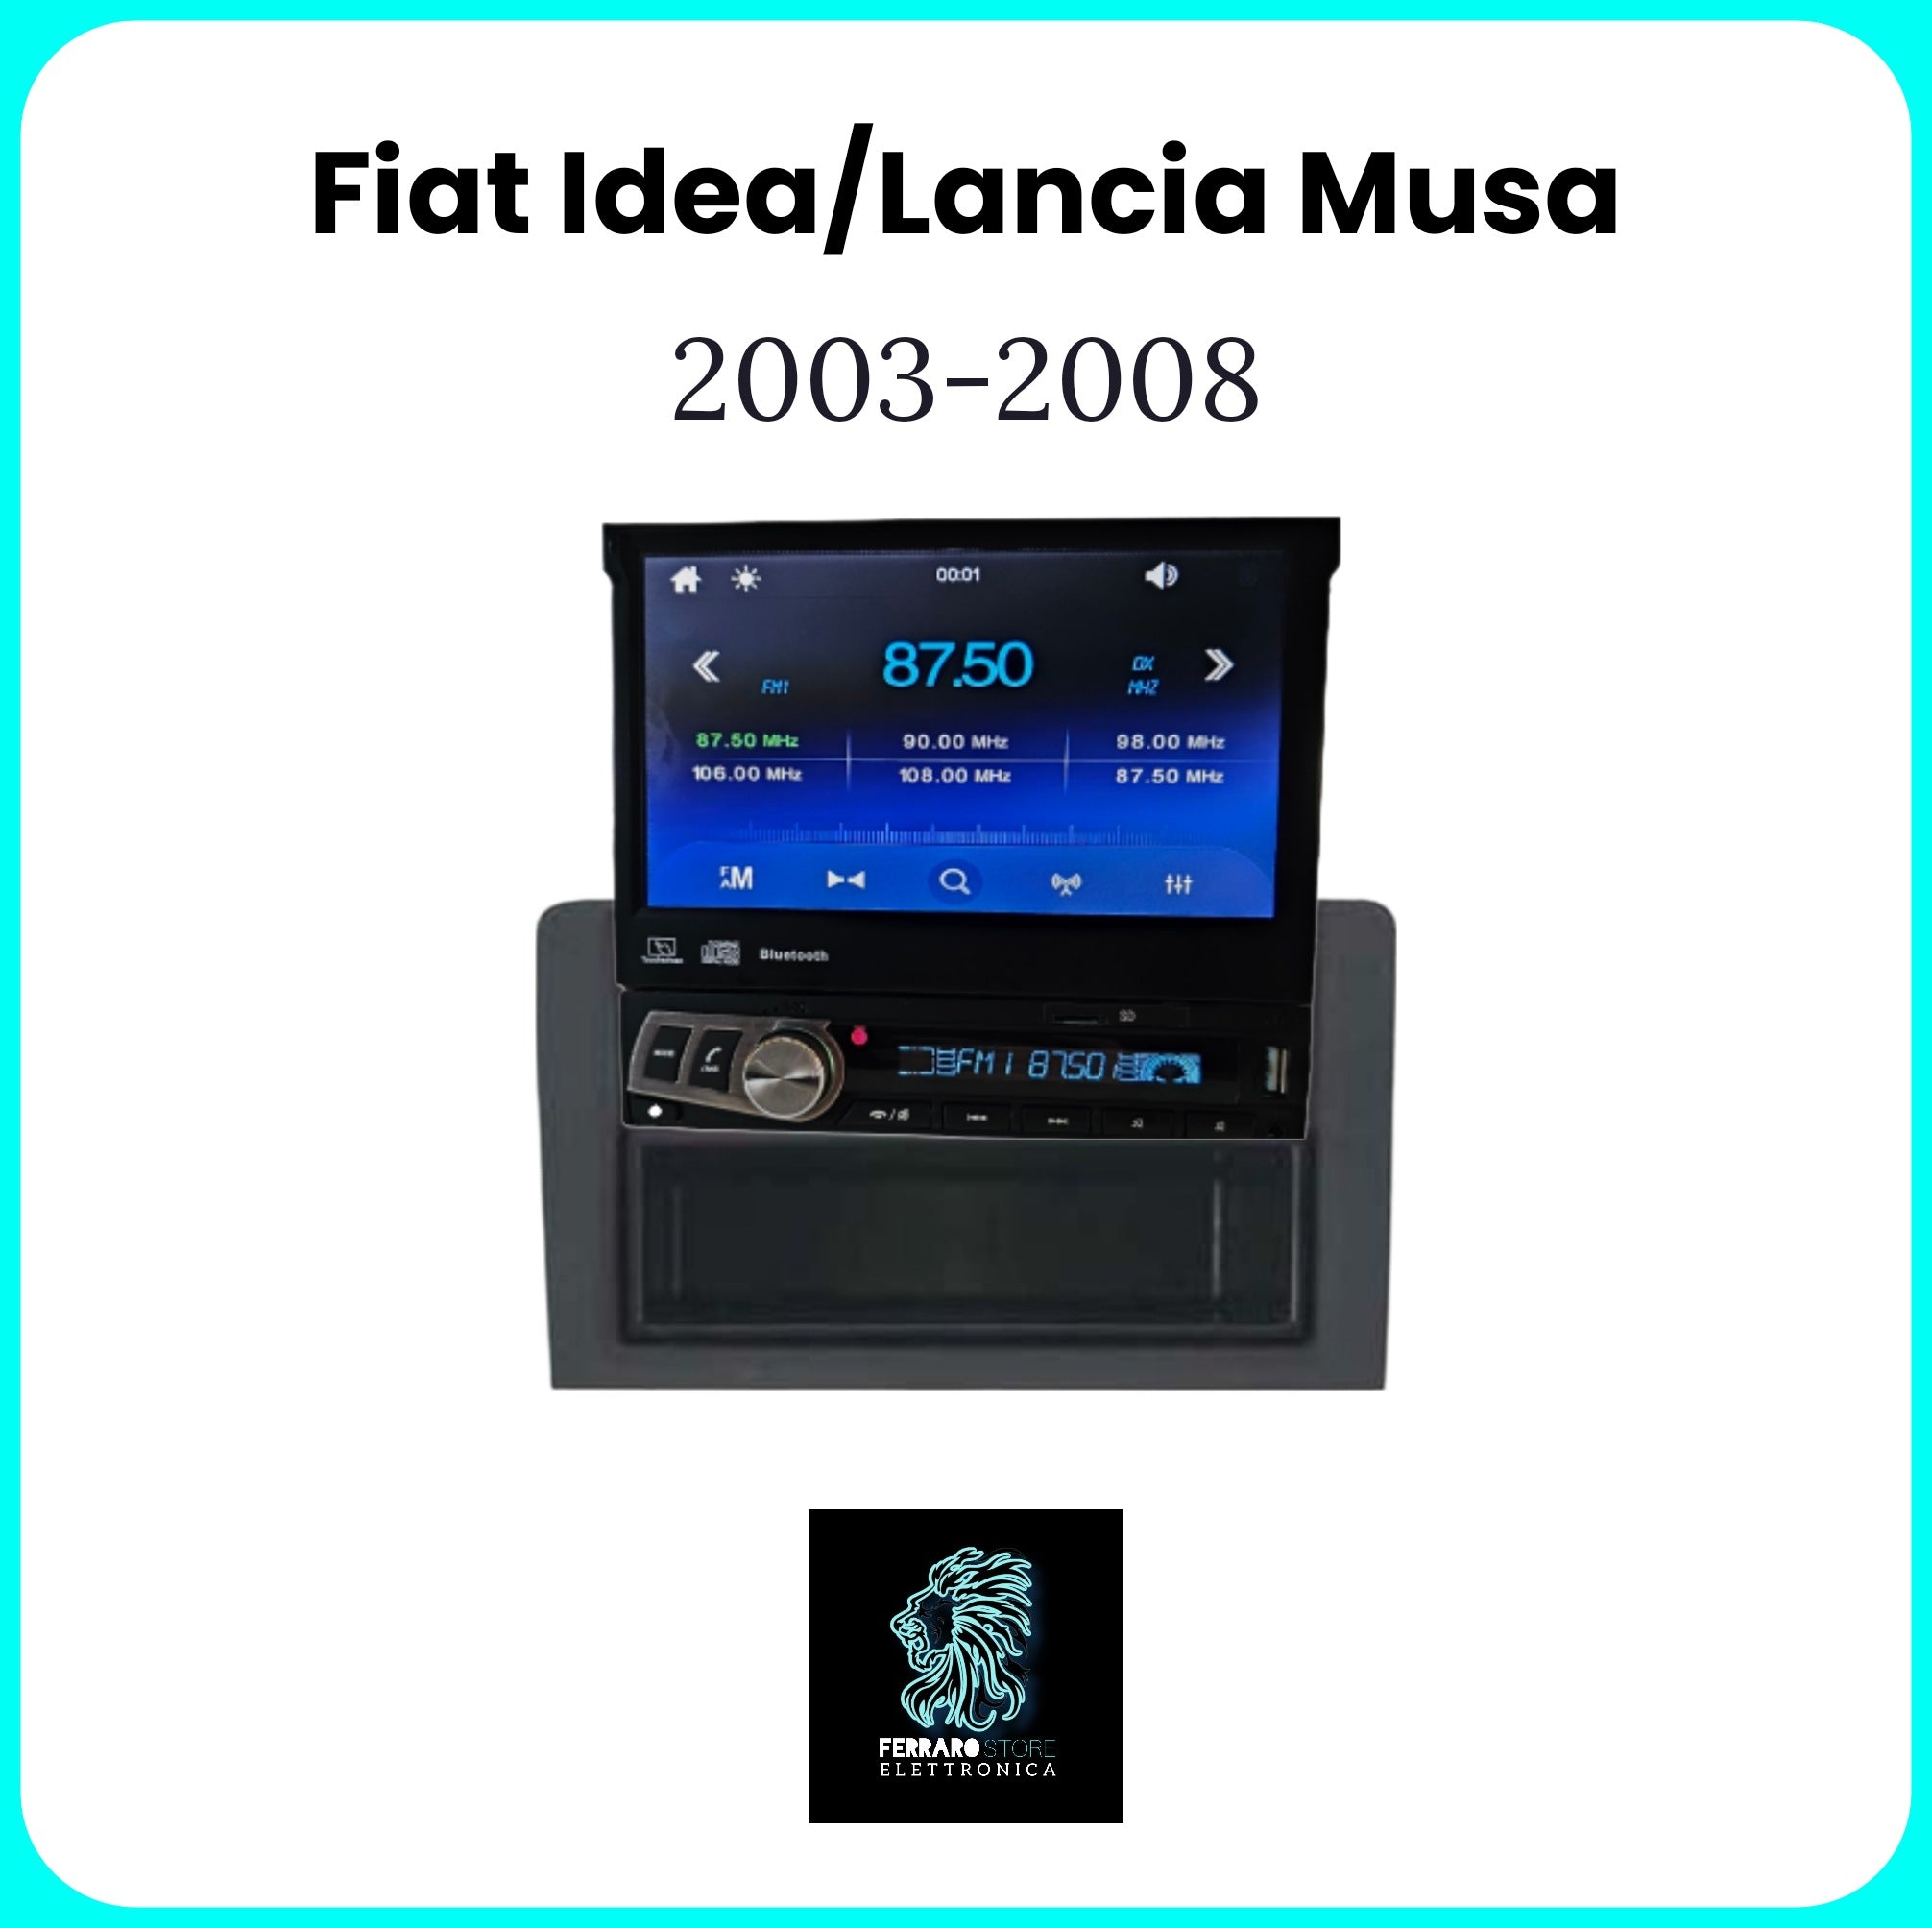 Autoradio per Fiat idea/Lancia Musa [2003-2008] - 1Din, Schermo 7"Pollici Motorizzato, Bluetooth, Radio, USB, Mirror Link per Android